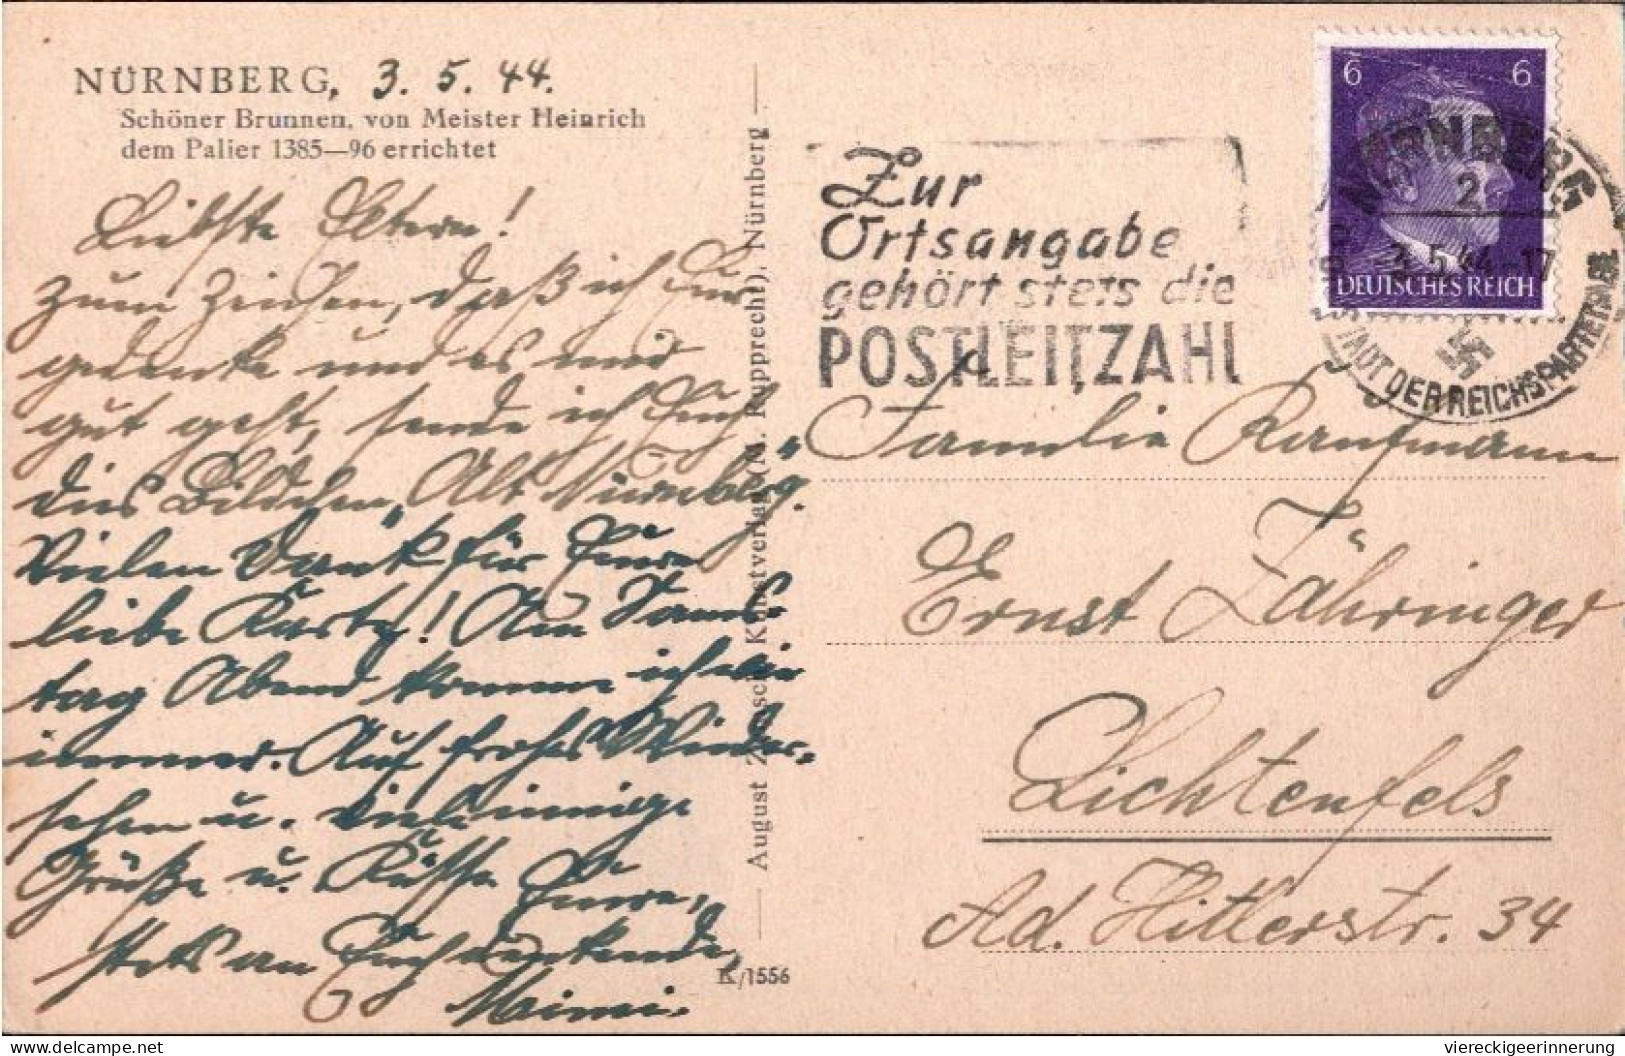 ! Karte Aus Nürnberg, Maschinenwerbestempel 1944, Posteigenwerbung, Zur Ortsangabe Gehört Stets Die  Postleitzahl - Lettres & Documents